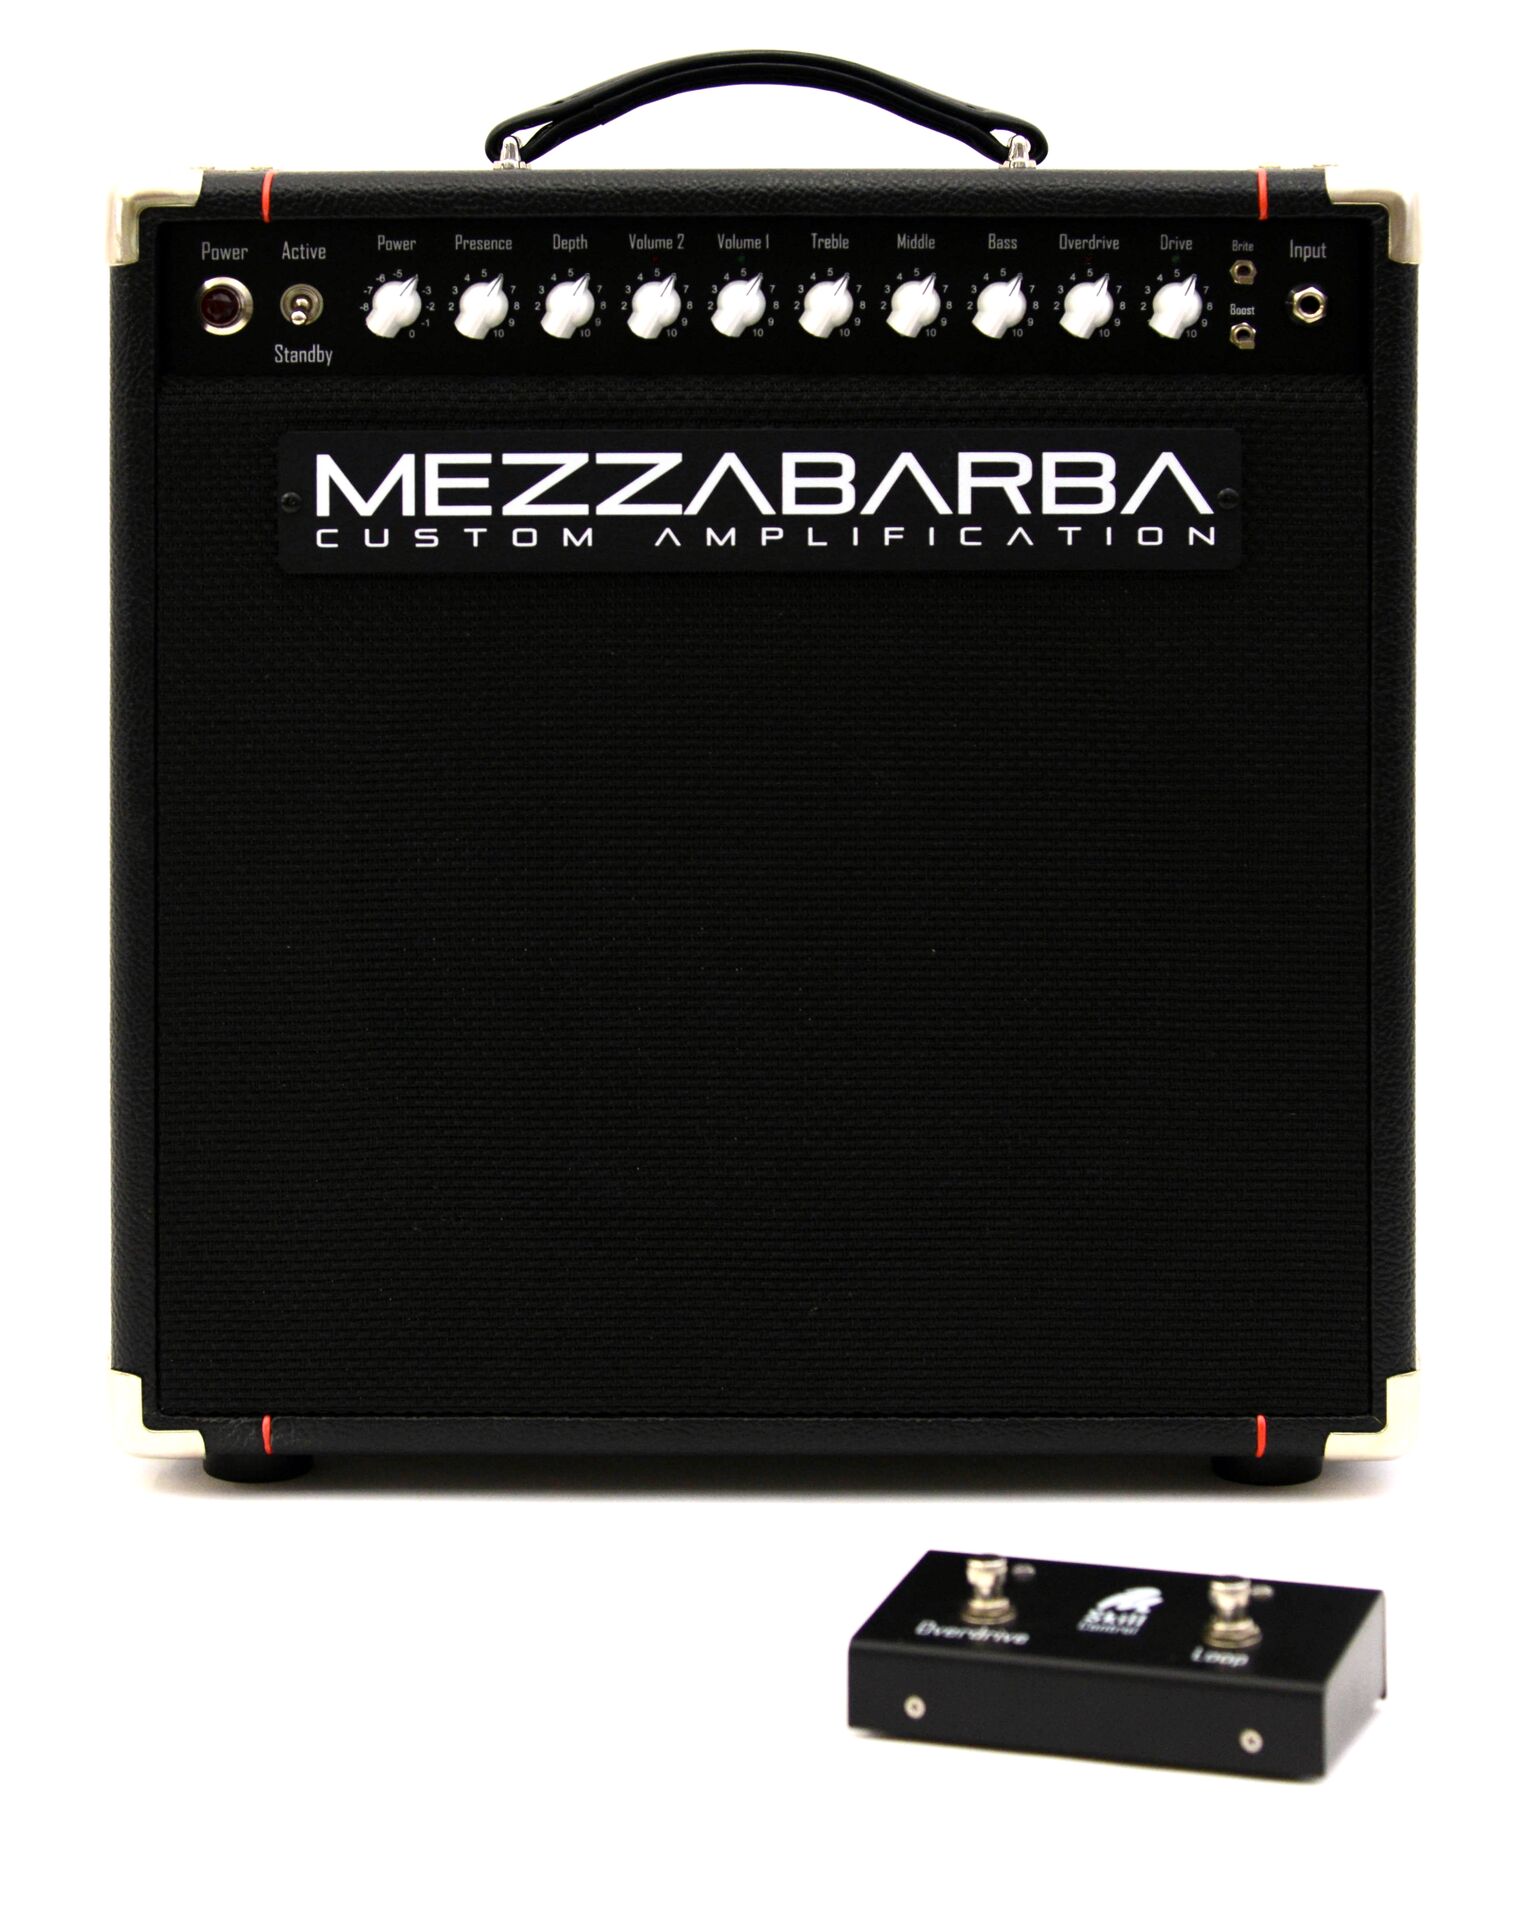 DSC 4054 preview - Mezzabarba Skill 30 Combo Guitar Tube Amp